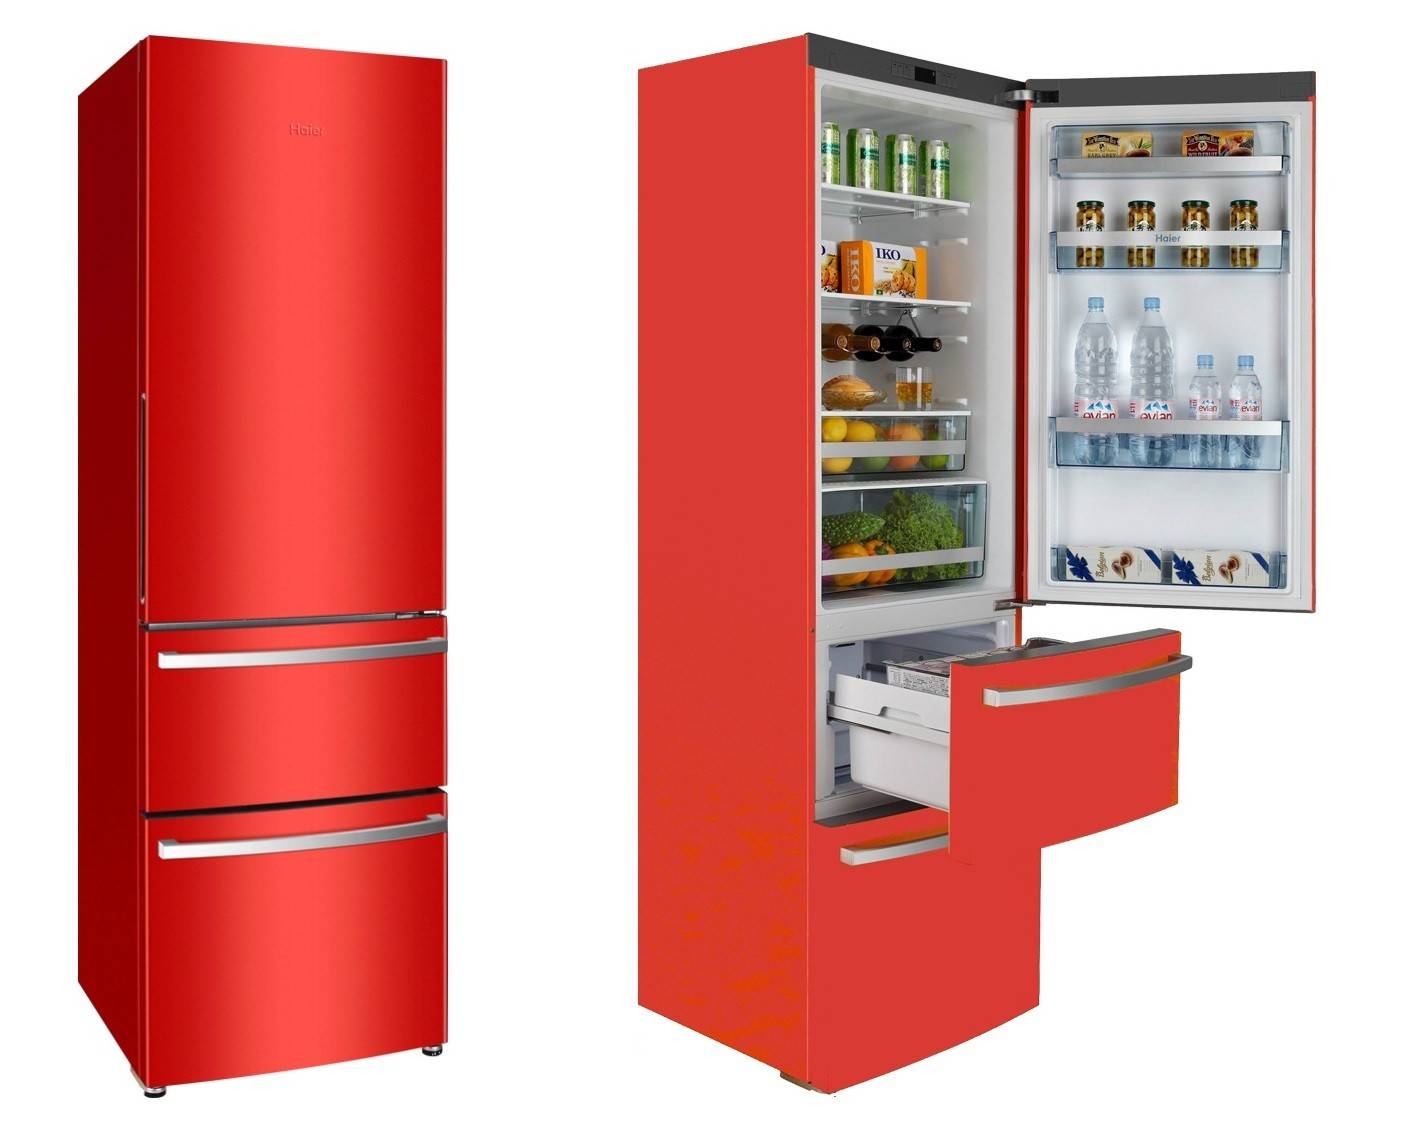 Холодильники "дон": отзывы о модели